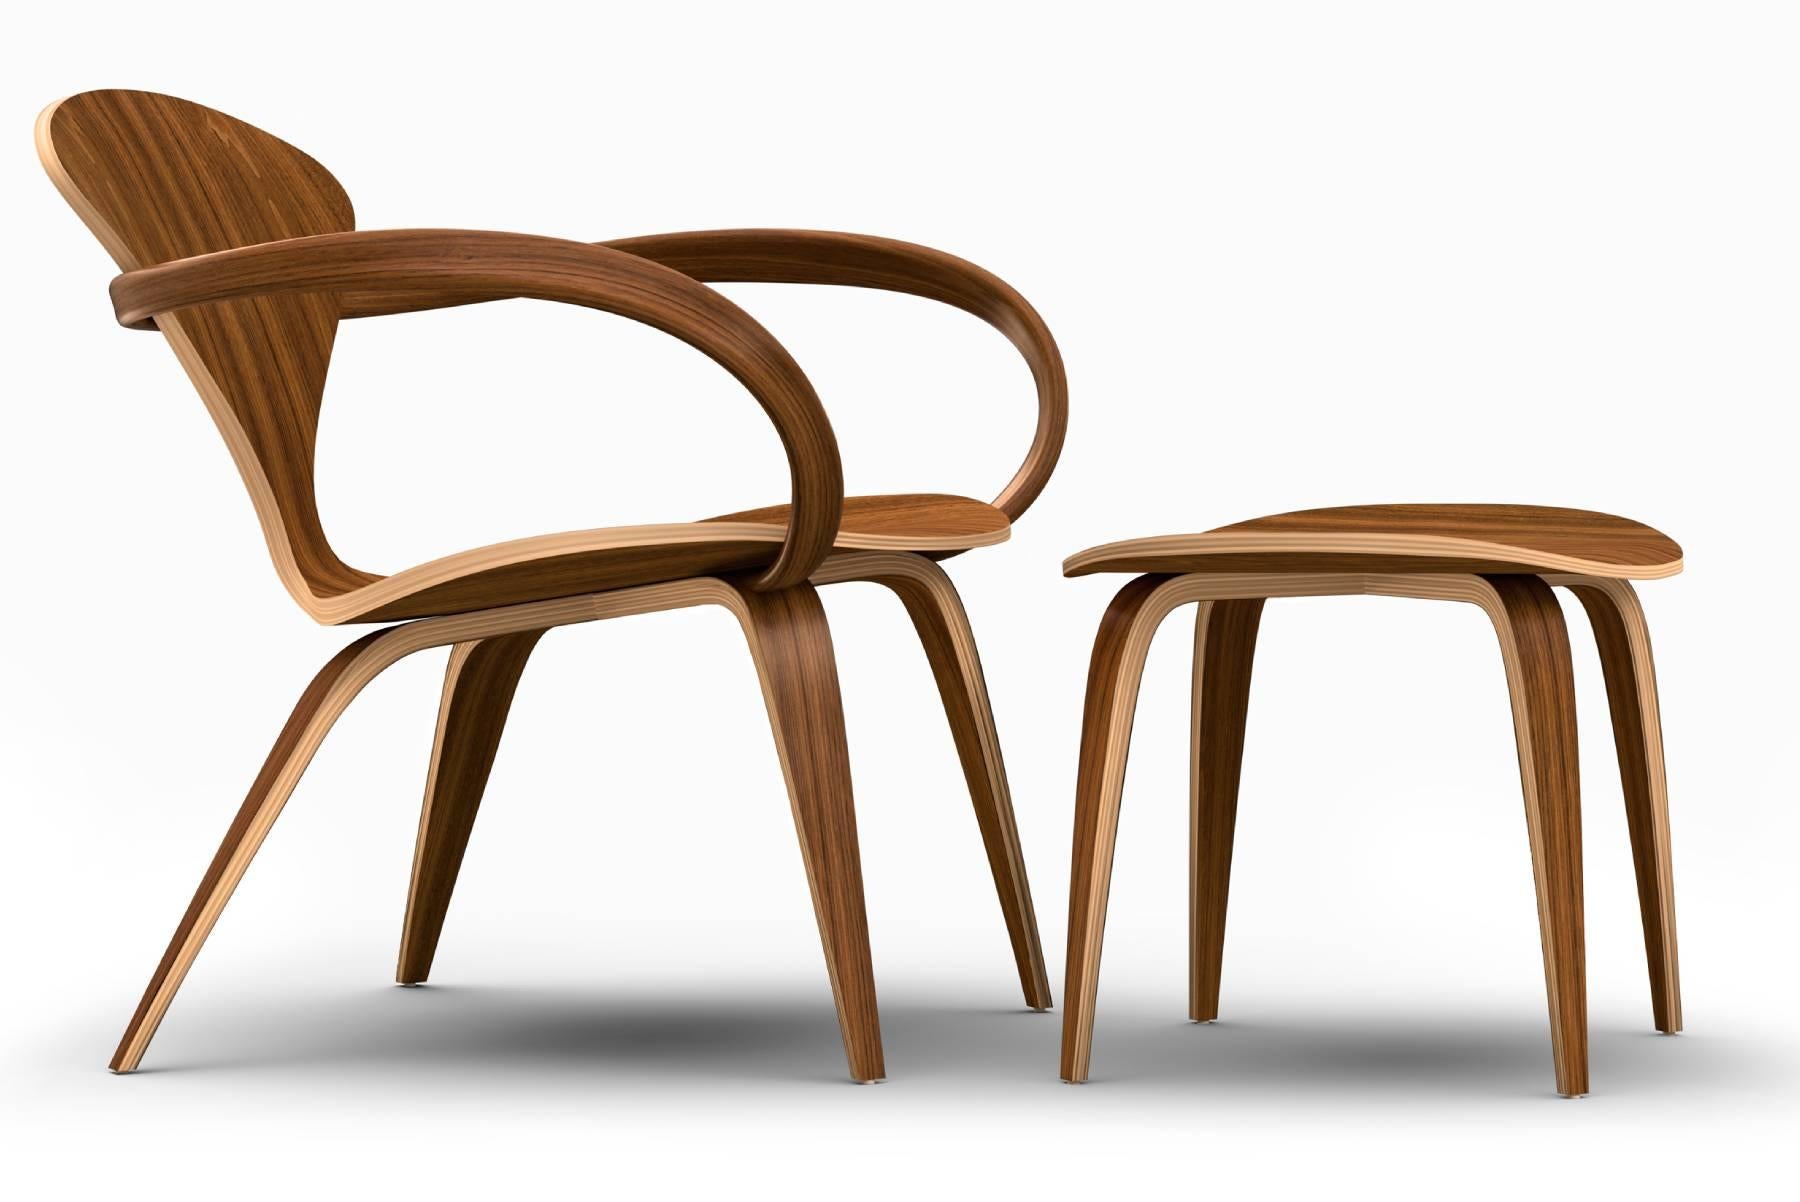 Der von Benjamin Cherner entworfene Loungesessel mit Ottomane ist die neueste Ergänzung der Cherner-Sitzmöbelkollektion. Die Schale aus geformtem Sperrholz, die Armlehnen aus massivem Bugholz und der Sockel aus Schichtholz bilden eine dynamische,